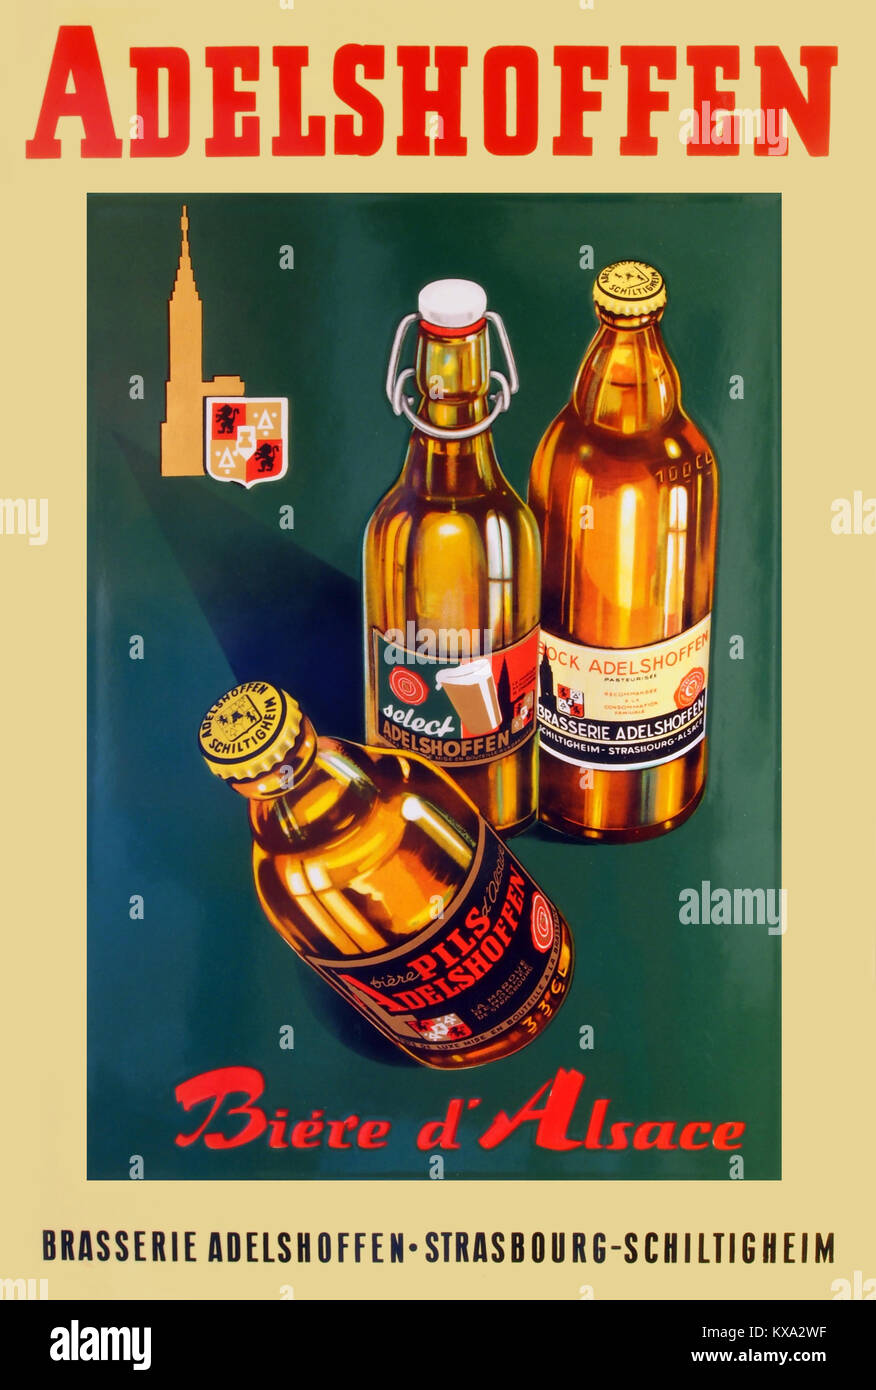 Publicité alcool Banque de photographies et d'images à haute résolution -  Alamy